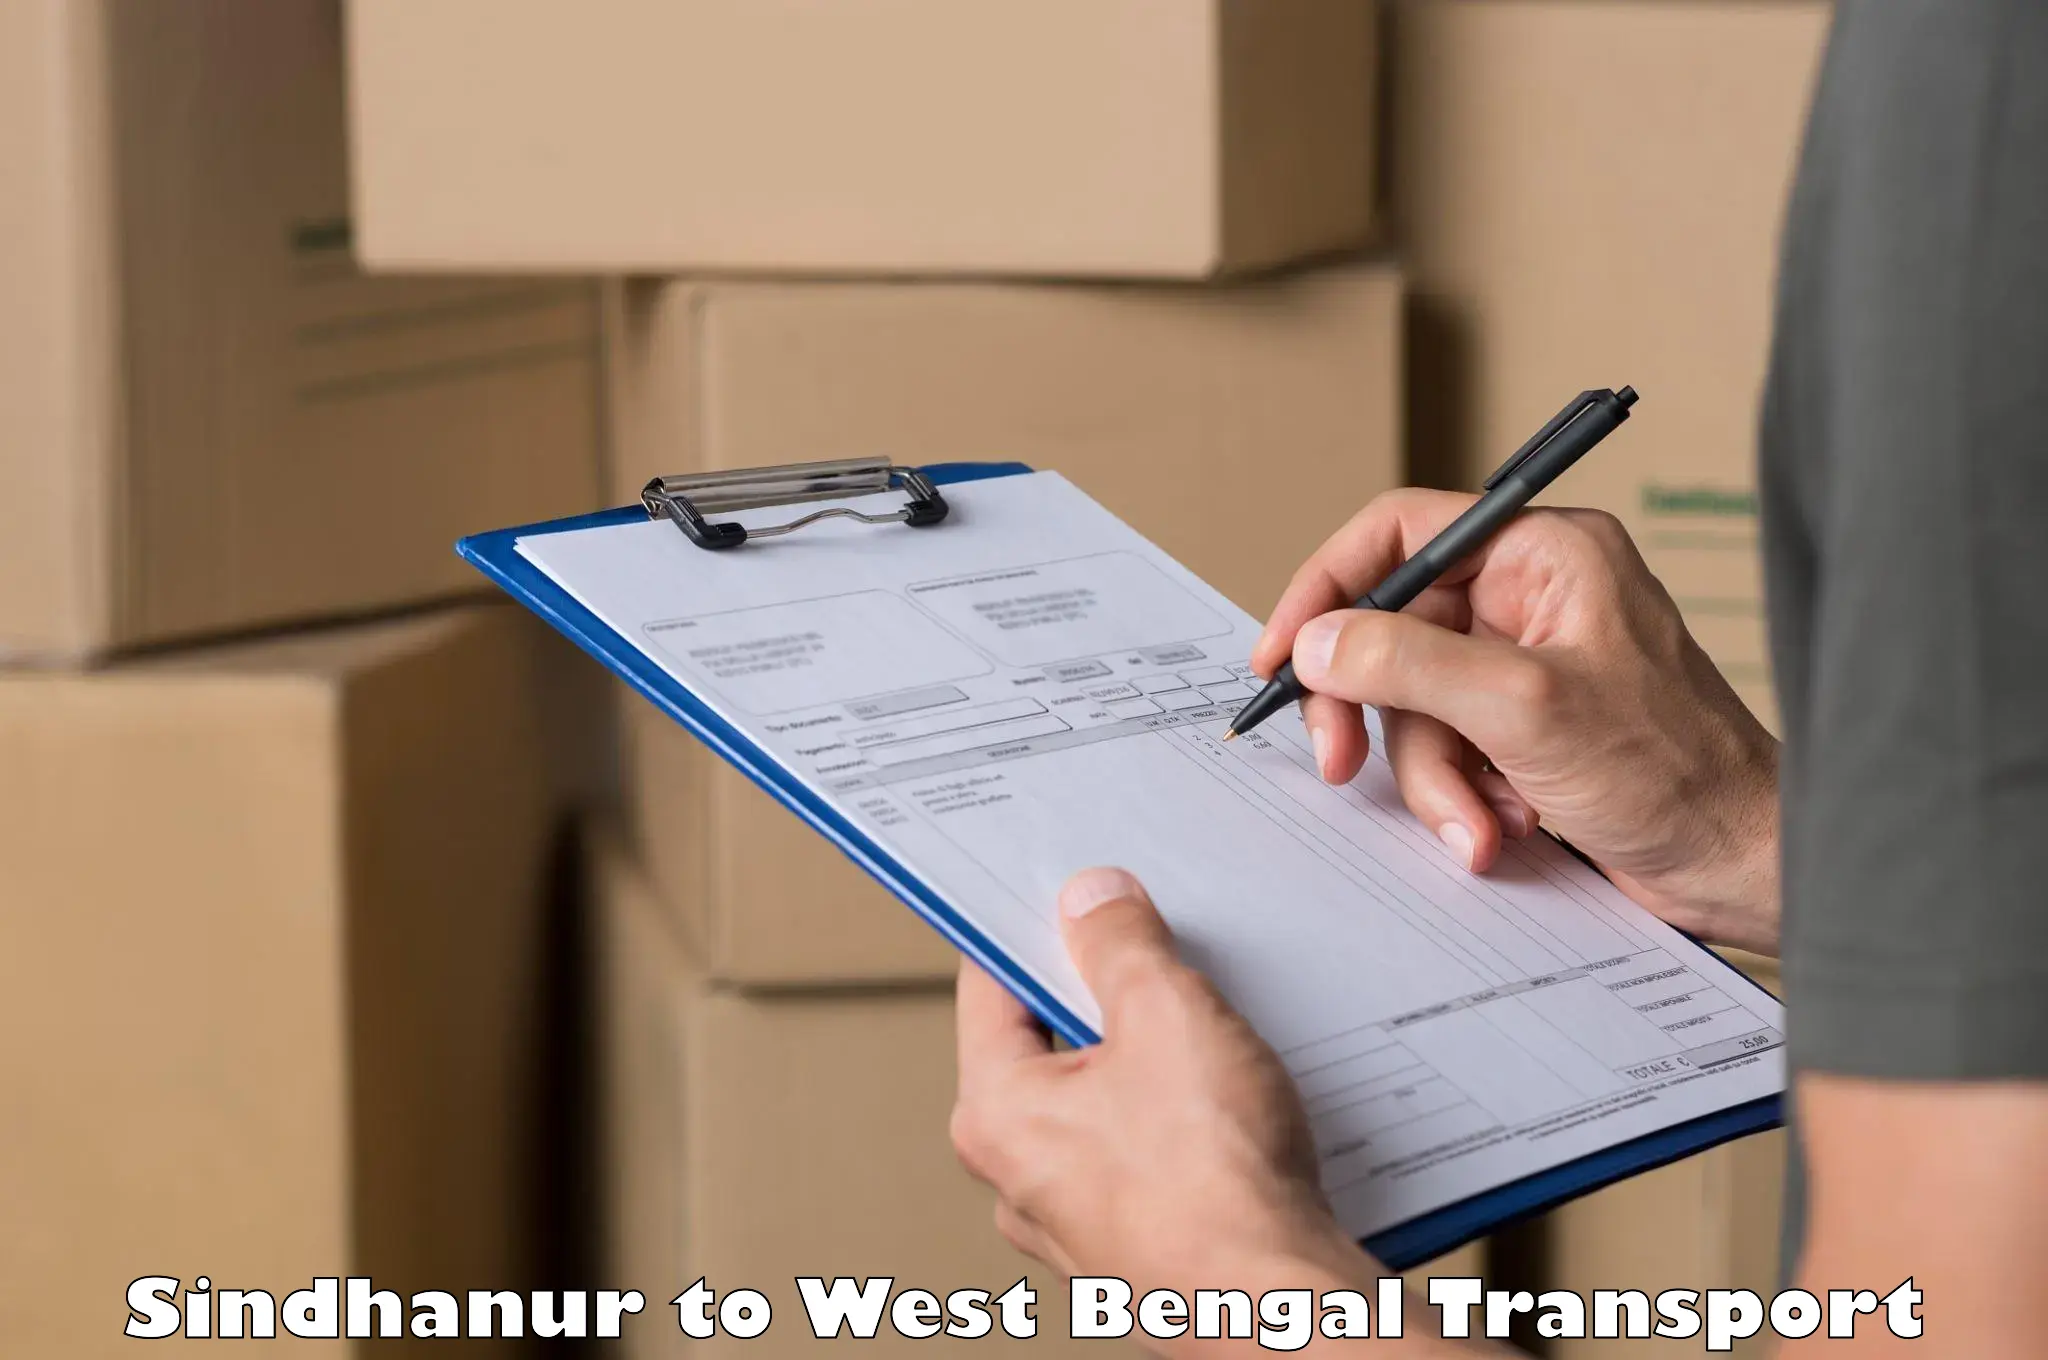 Furniture transport service Sindhanur to Barrackpore